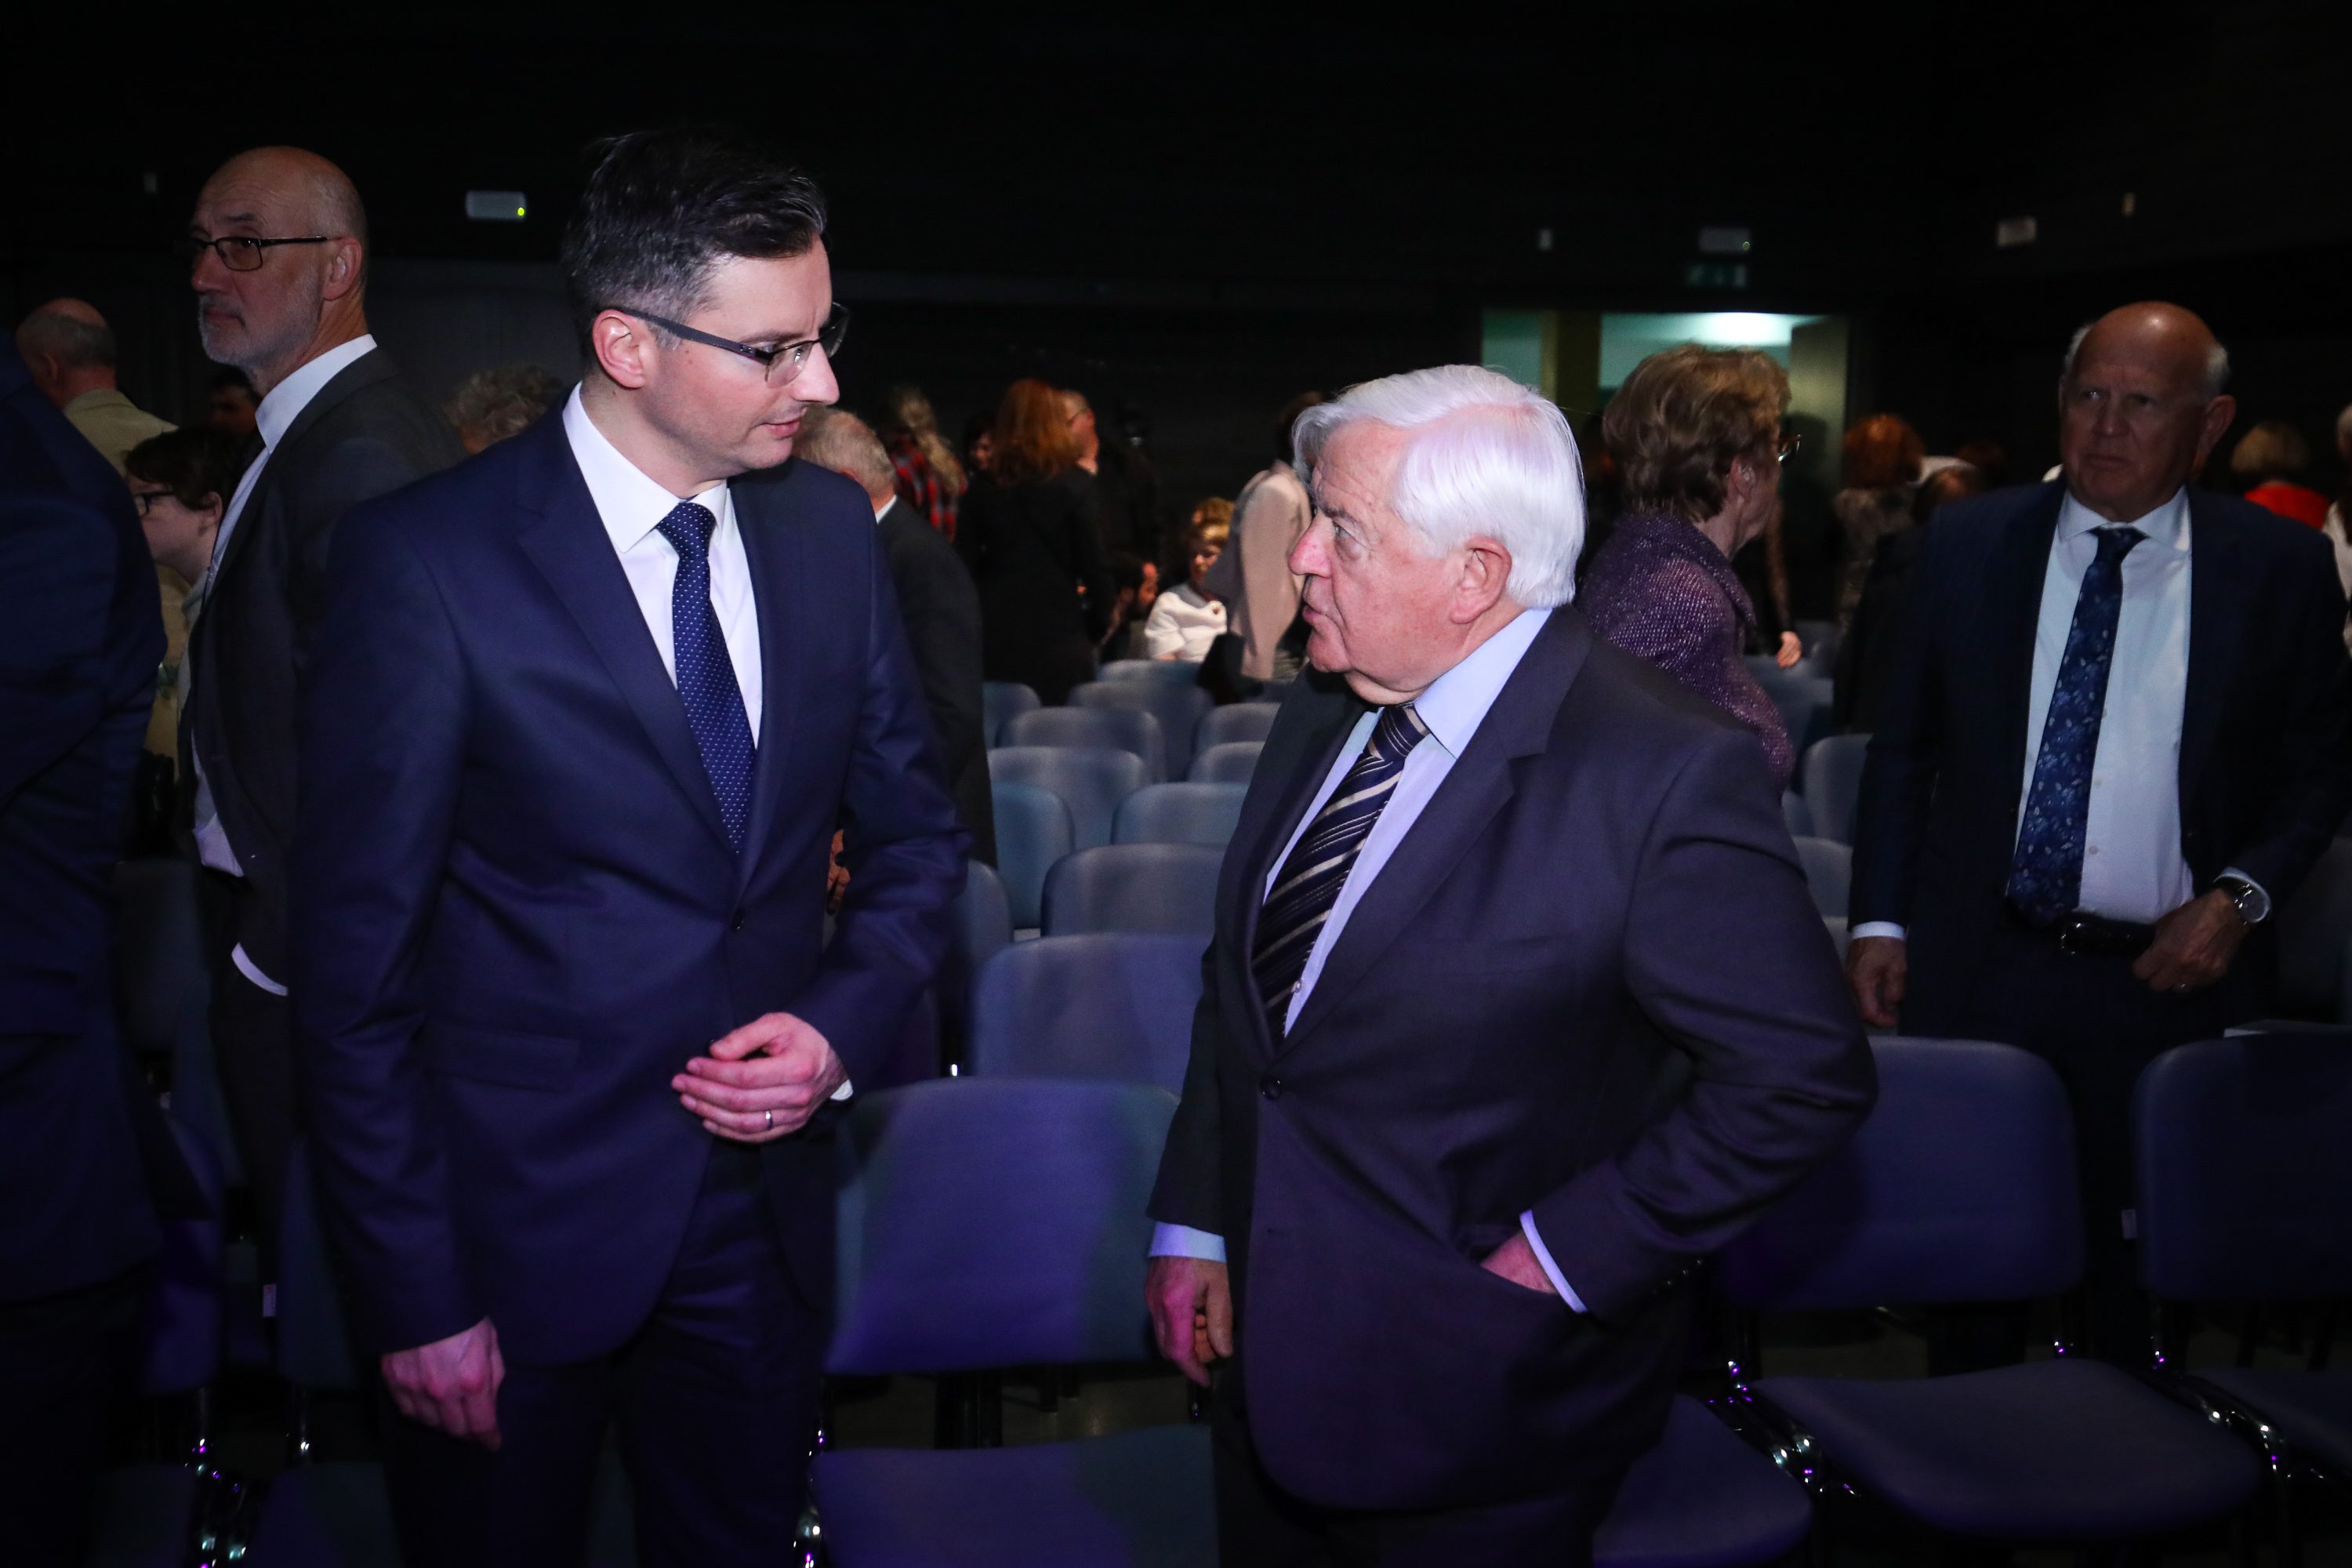 Predsednik slovenske vlade Marjan Šarec in Milan Kučan, bivši predsednik države in vodja najbolj vplivnega združenja slovenskih elit, Forum 21. (Foto: STA)